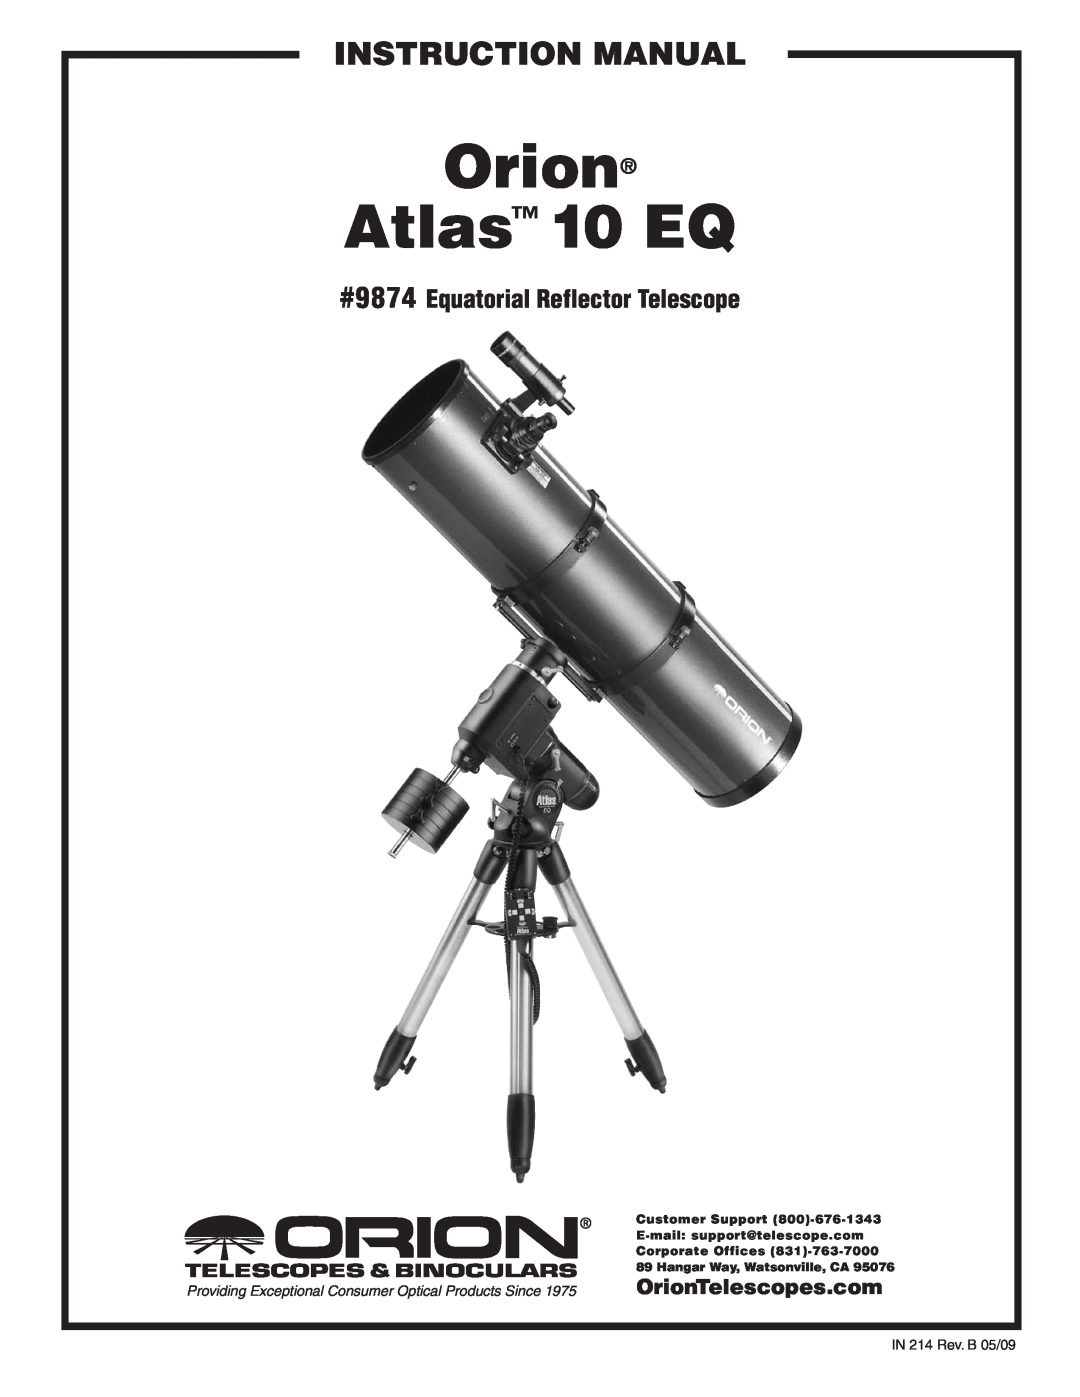 Orion instruction manual OrionTelescopes.com, Atlas 10 EQ, instruction Manual, #9874 Equatorial Reflector Telescope 